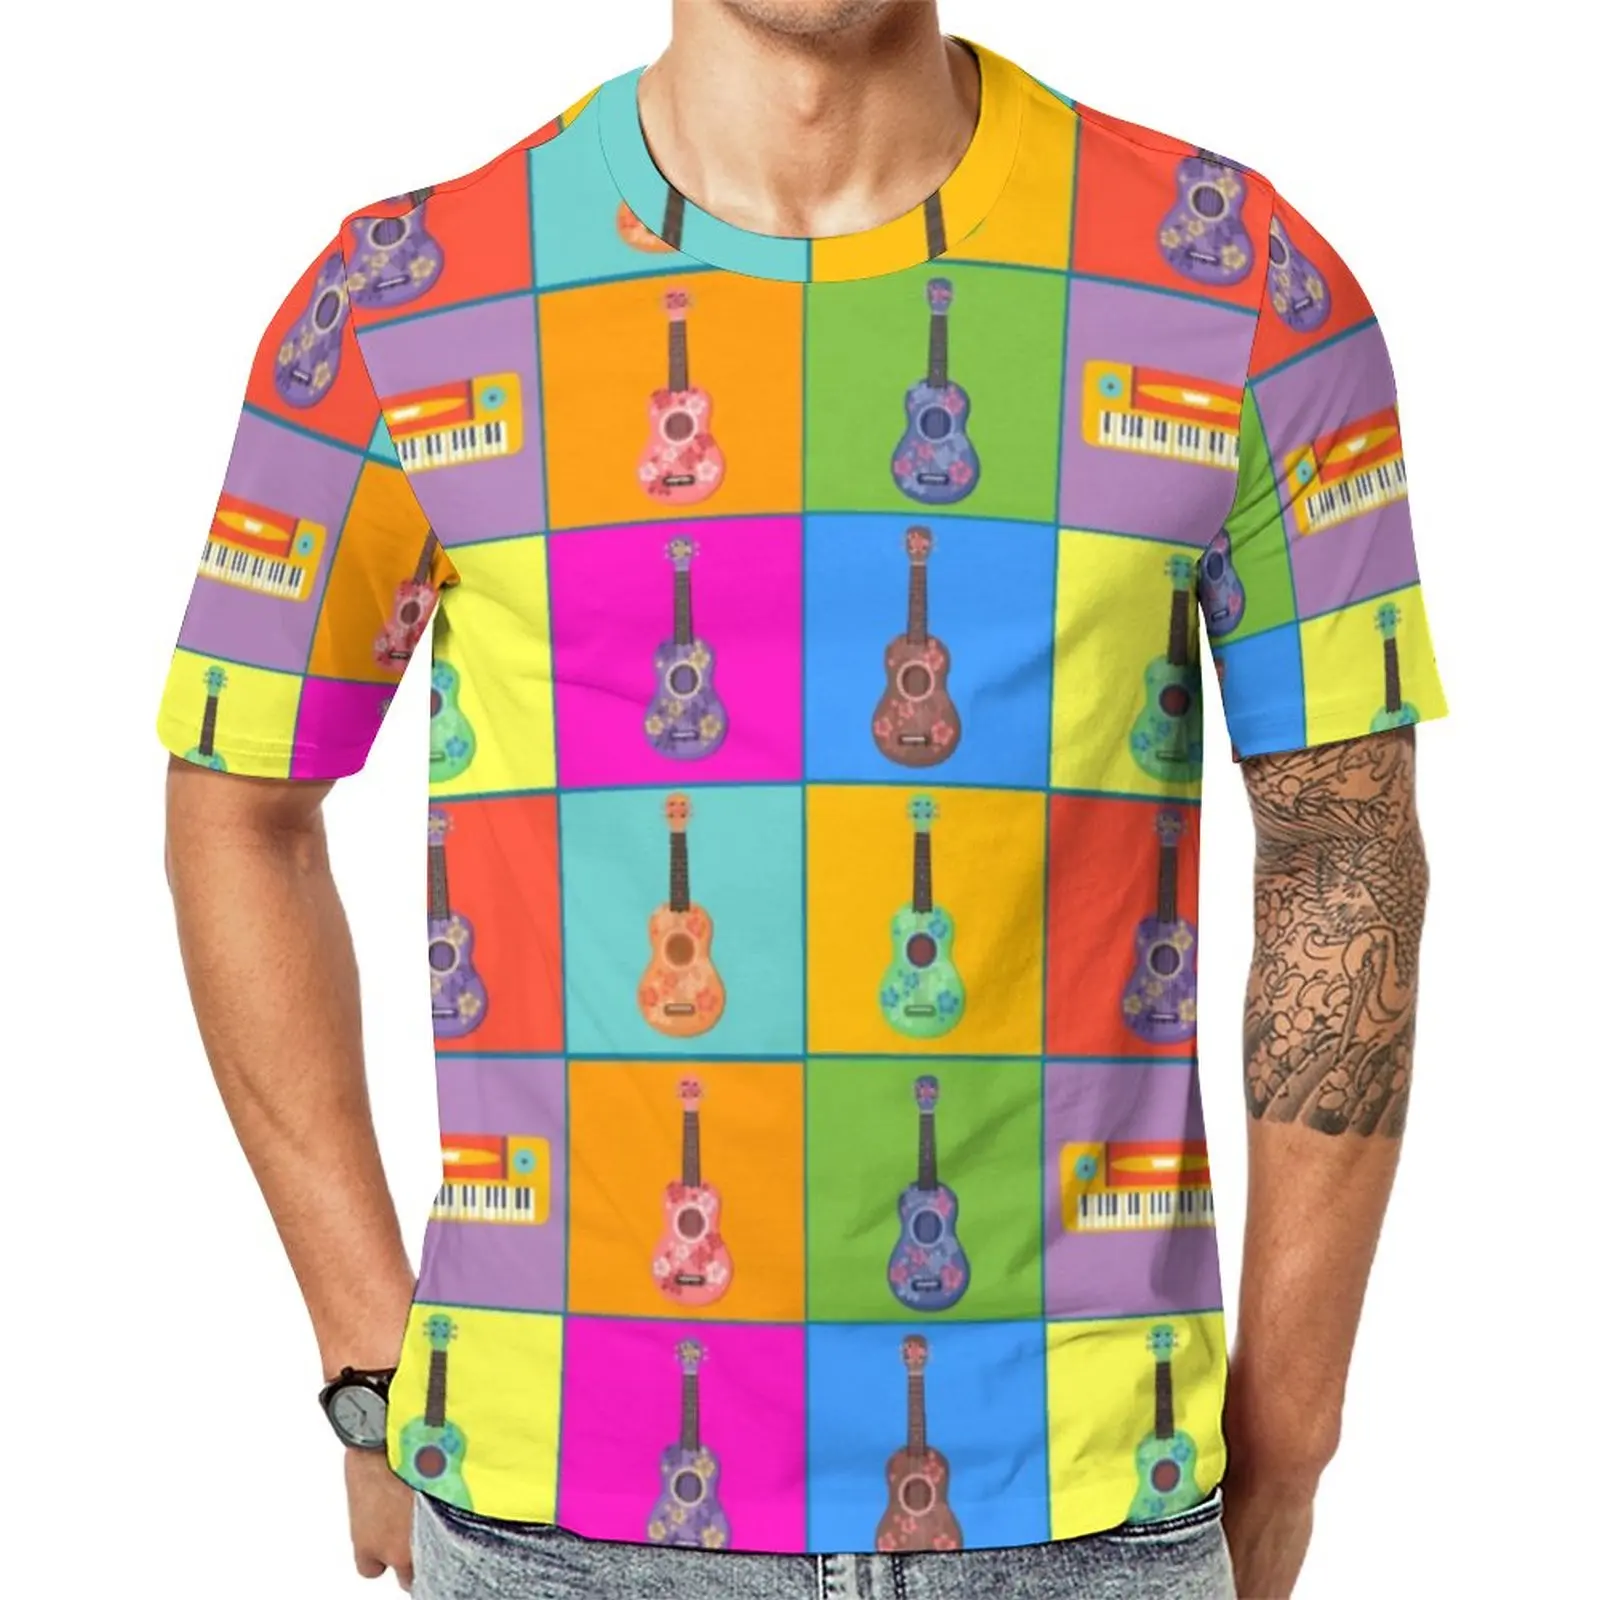 

Красочная футболка для музыки, мужские смешные футболки с рисунком поп-укулеле, оригинальные женские топы большого размера с коротким рукавом и графическим рисунком